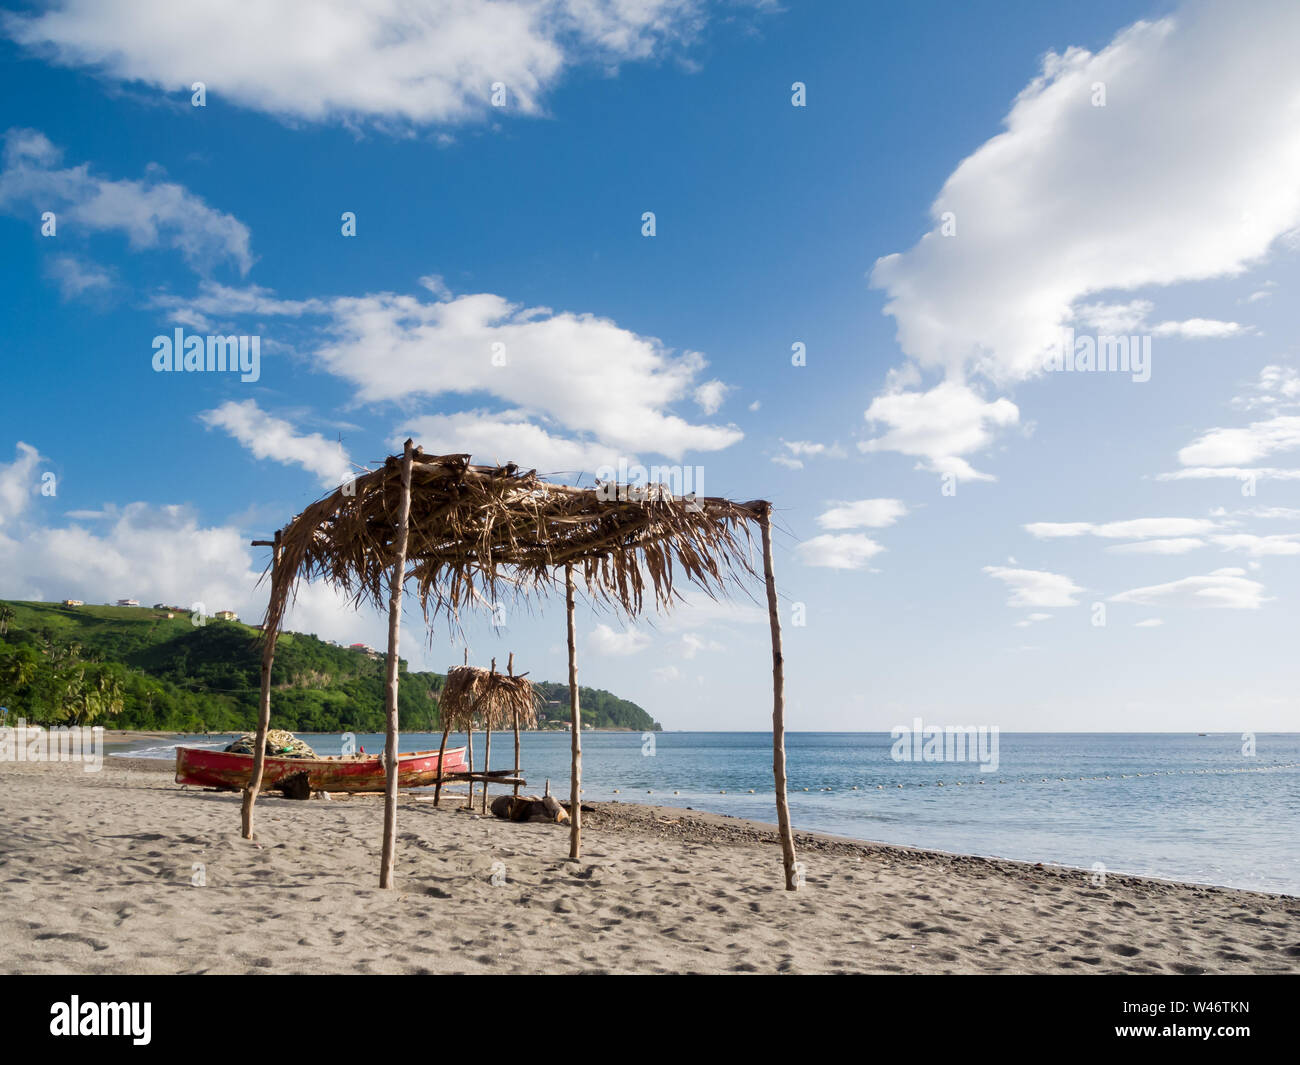 Vue de la plage sur l'île de la Dominique dans la mer des Caraïbes Banque D'Images